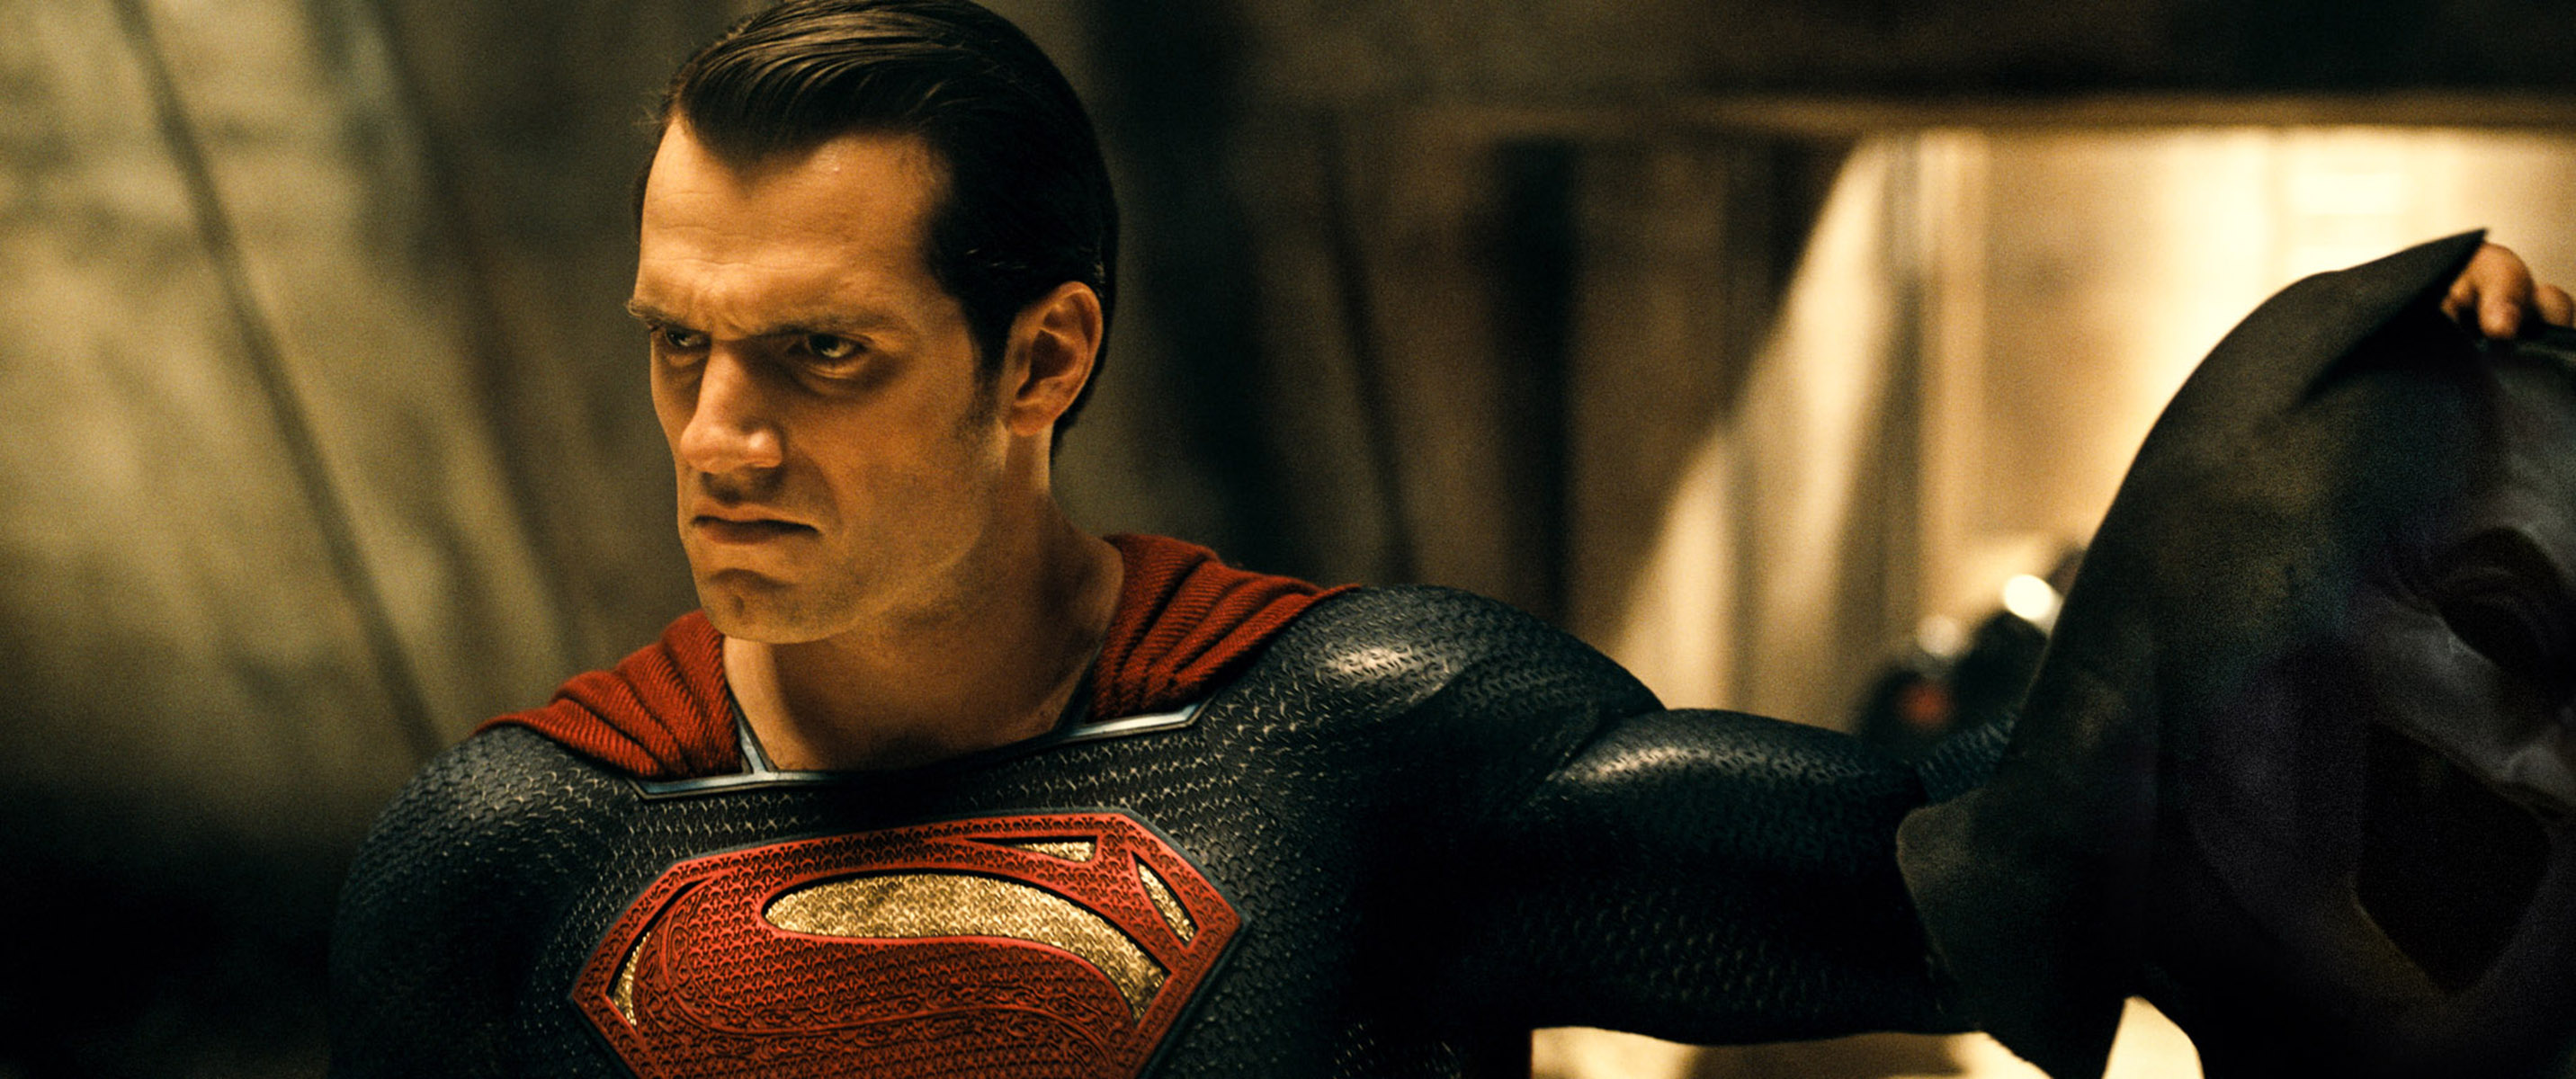 Sai primeira imagem de Henry Cavill como Super-Homem em “Batman V Superman”